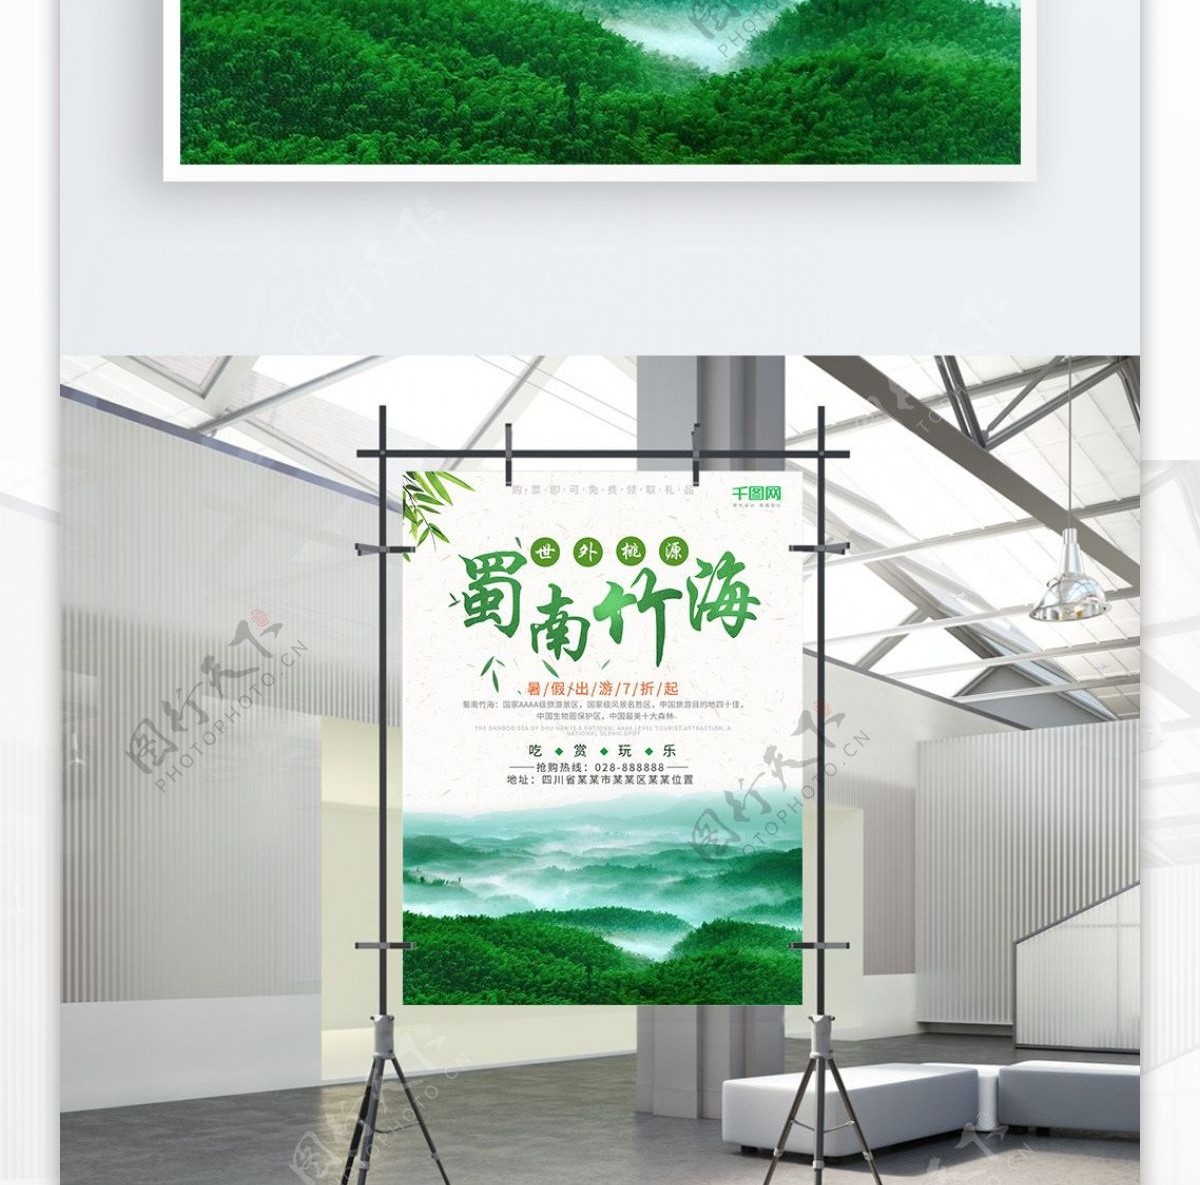 蜀南竹海旅游暑假旅游旅行社宣传海报